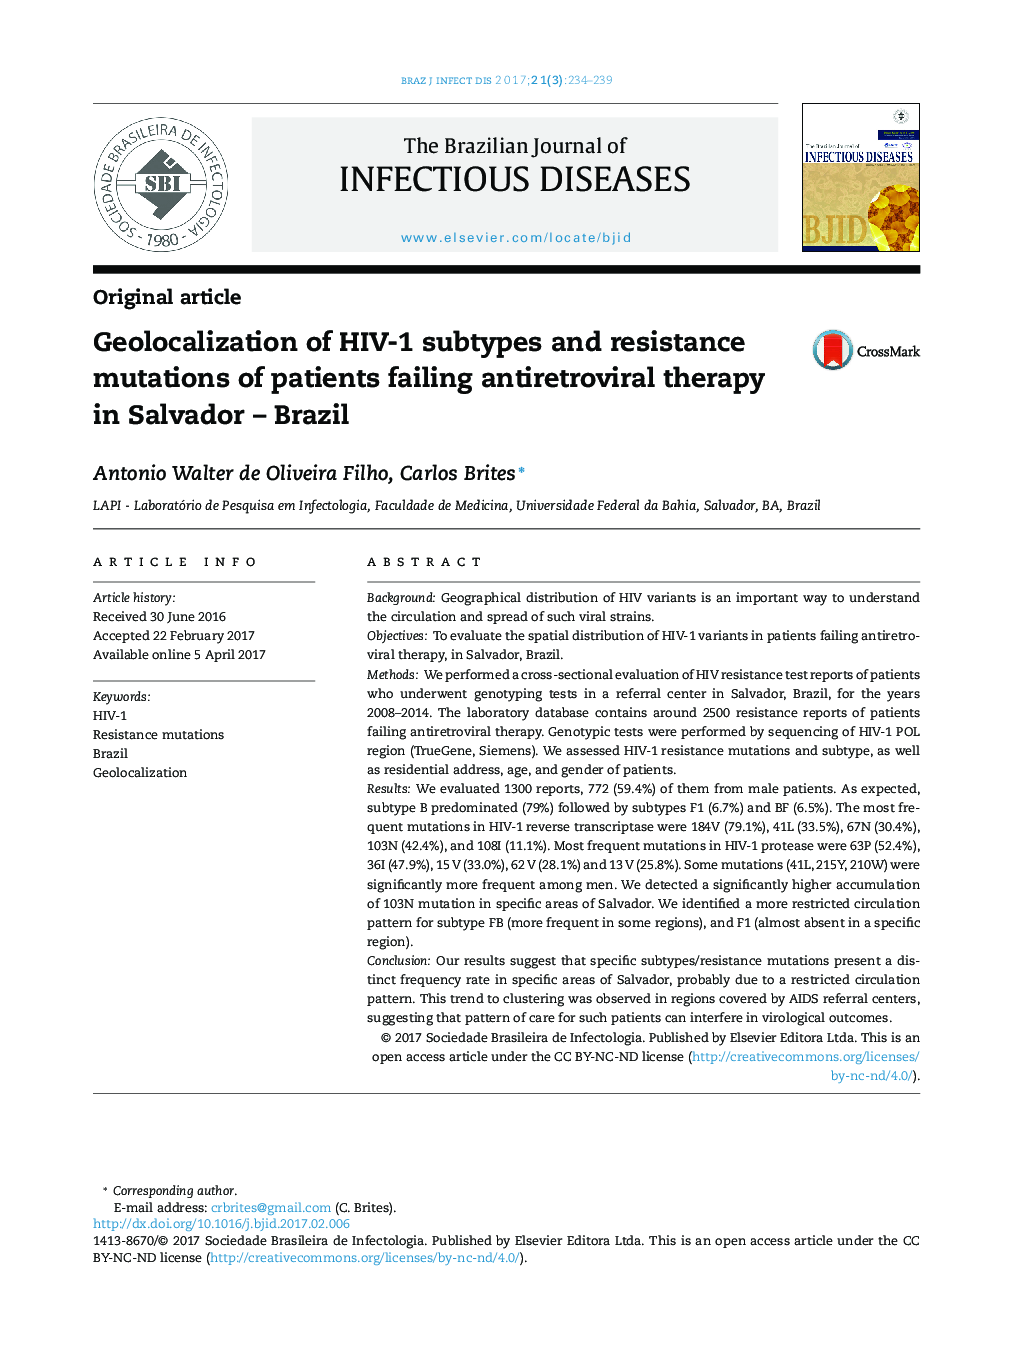 ژئولوکالیزاسیون زیرپروتئین های HIV-1 و جهش های مقاوم در برابر بیماری های درمان ضد رتروویروسی در سالوادور â ؟؟ برزیل